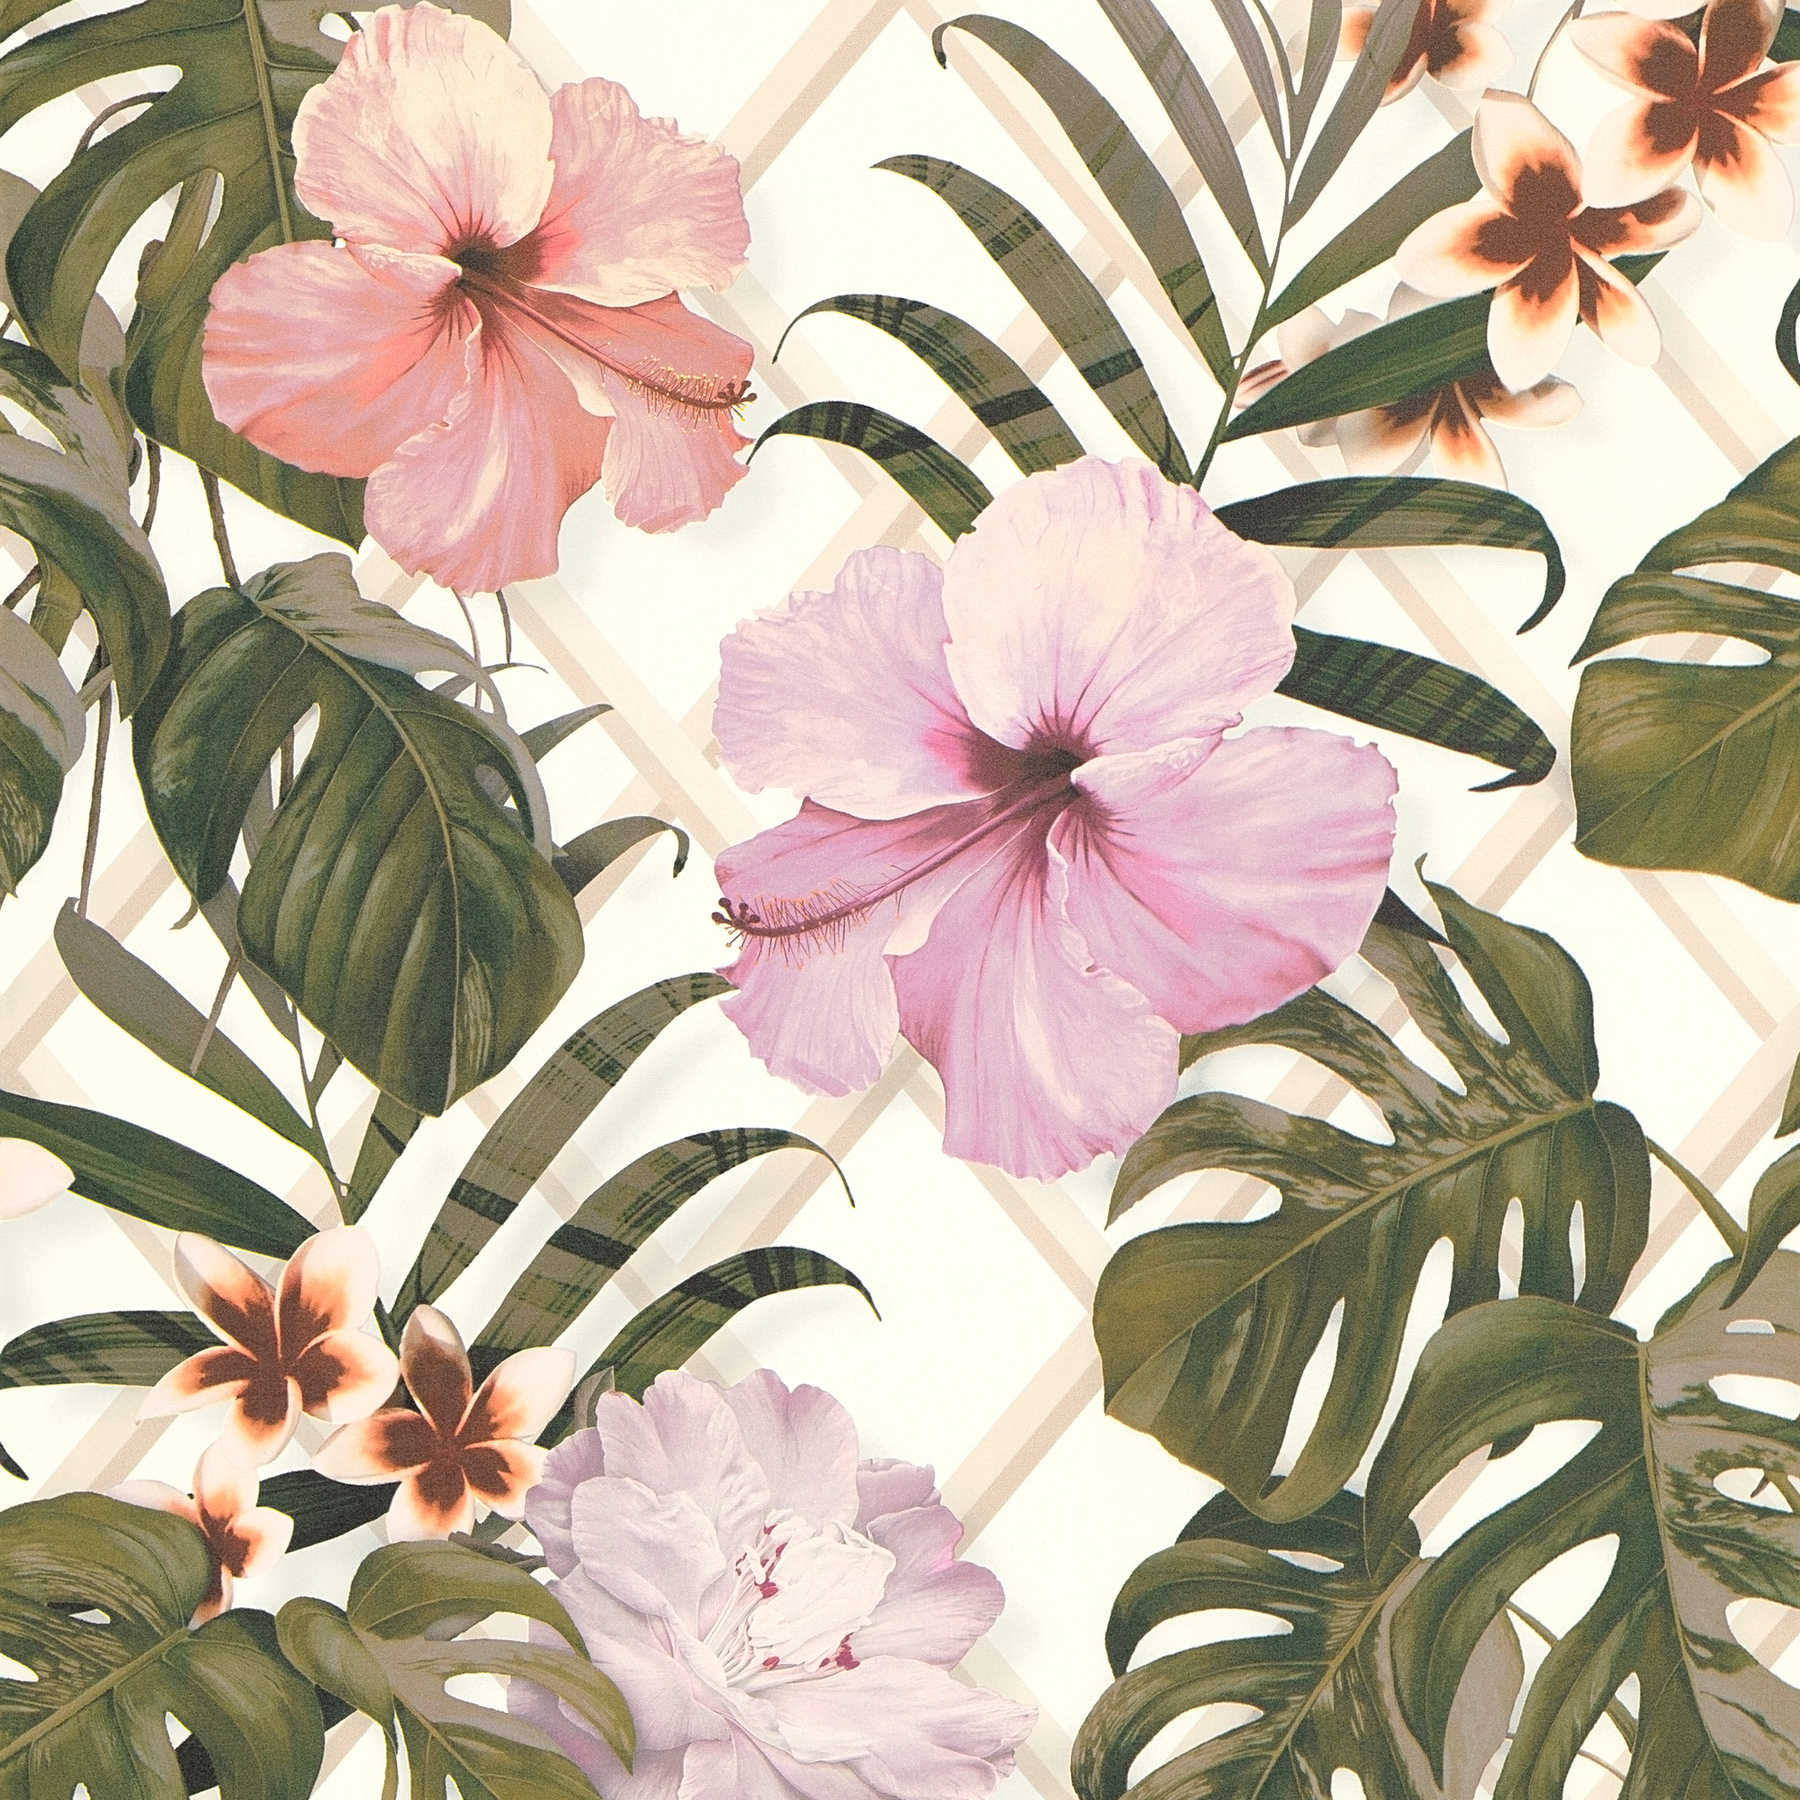 Dschungel Tapete mit Blumen Muster – Grün, Rosa, Weiß
